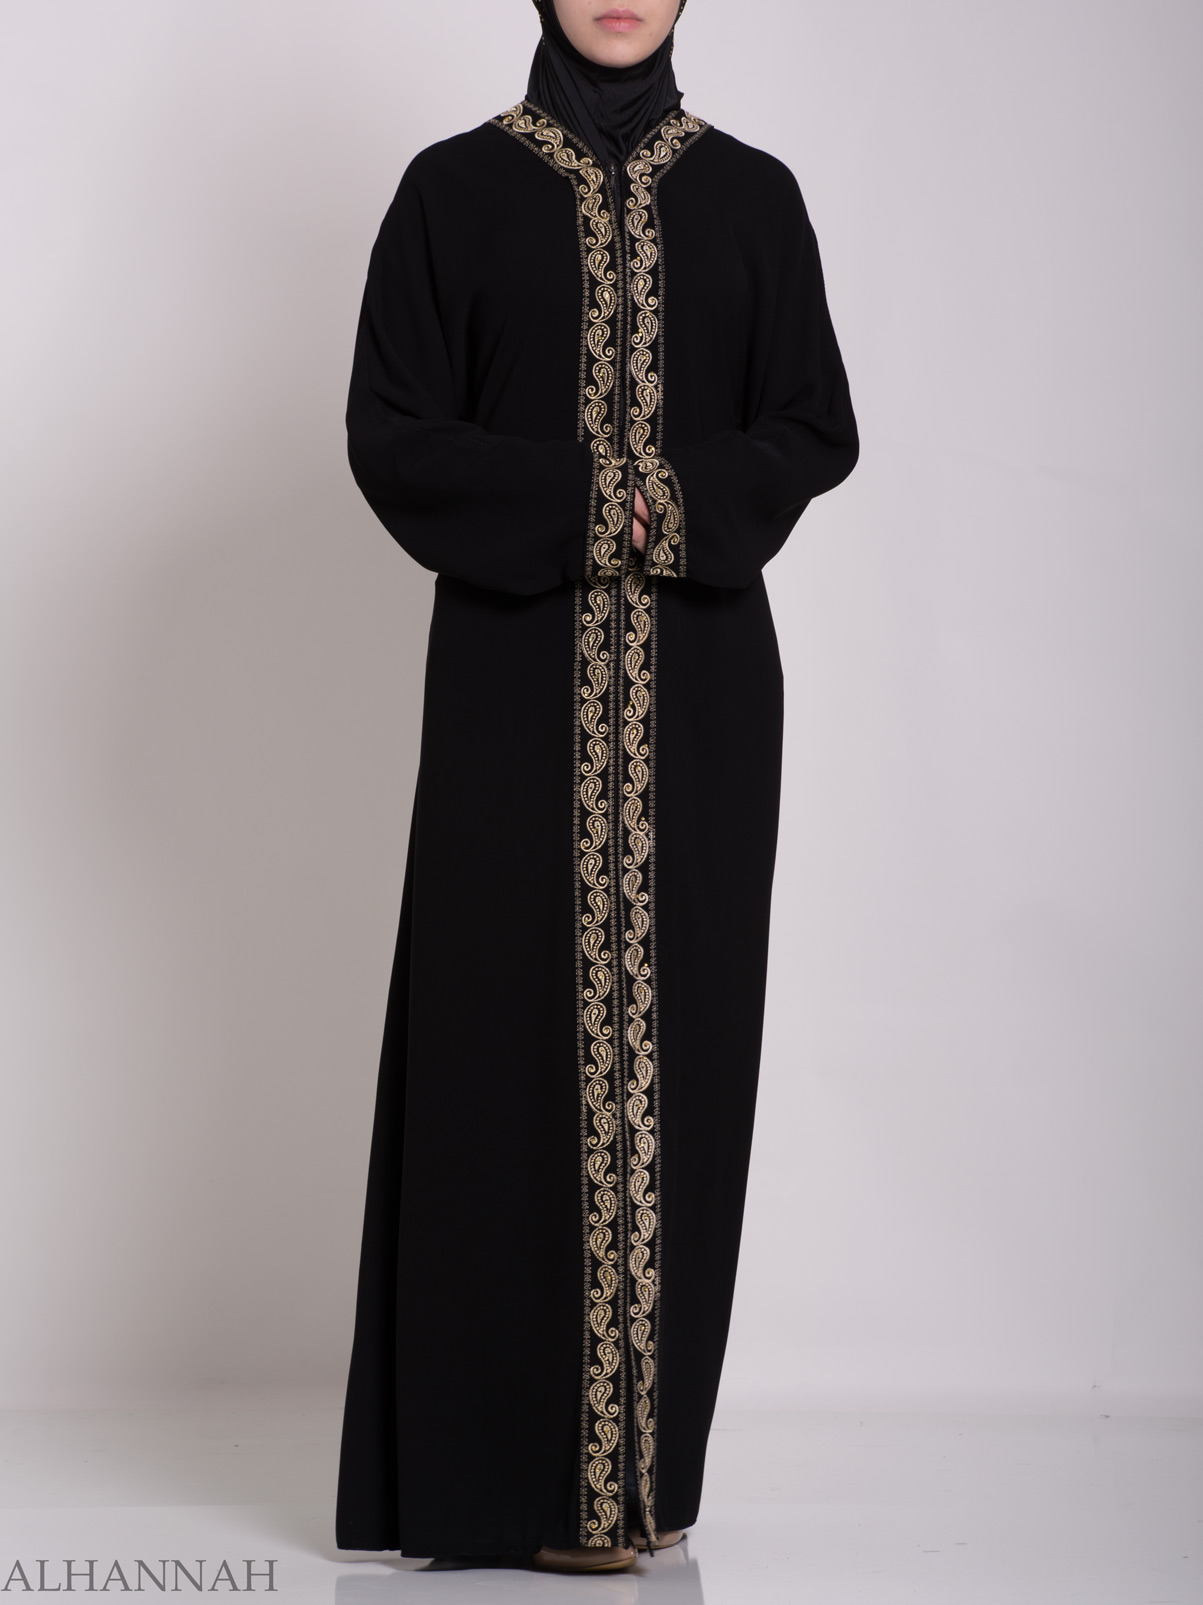 Wadad Khalije  Abaya  ab657  Alhannah Islamic Clothing